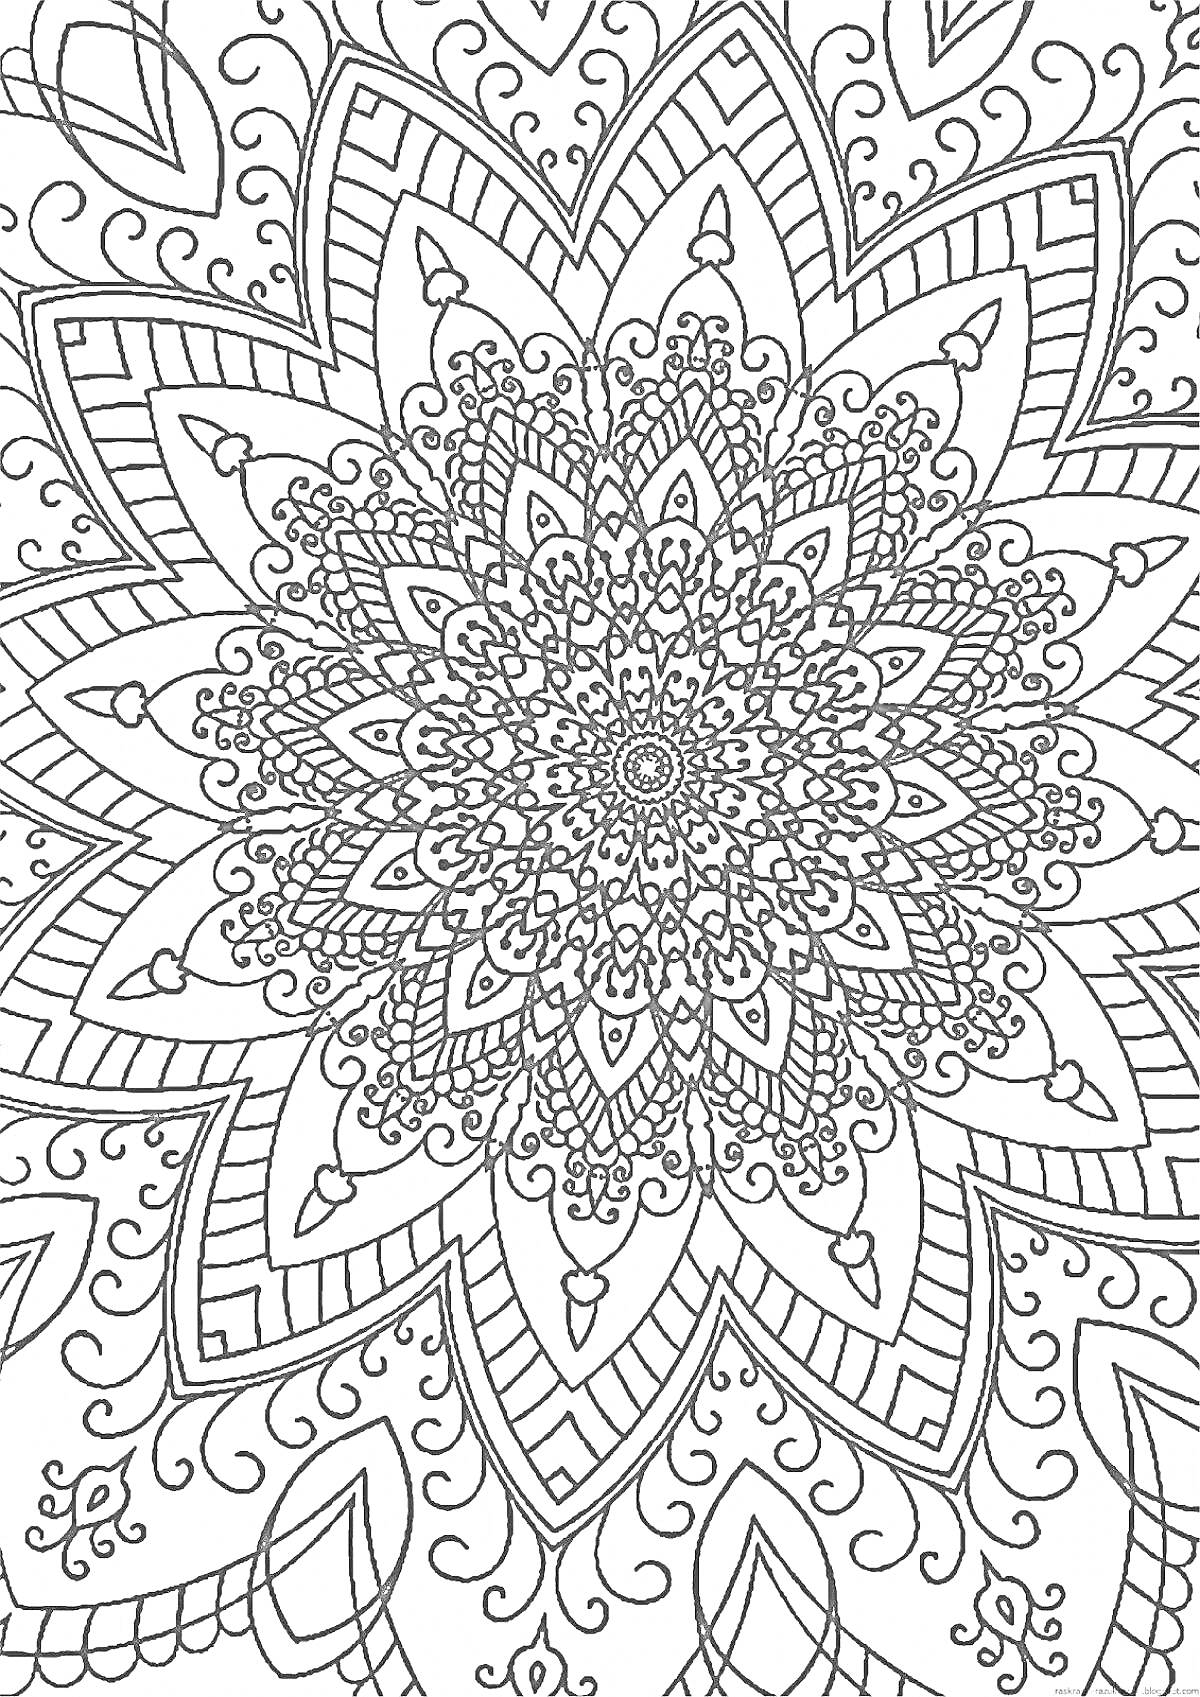 Раскраска Антистресс арт раскраска с детализированной мандалой, включающей узоры с цветами, линиями и завитками